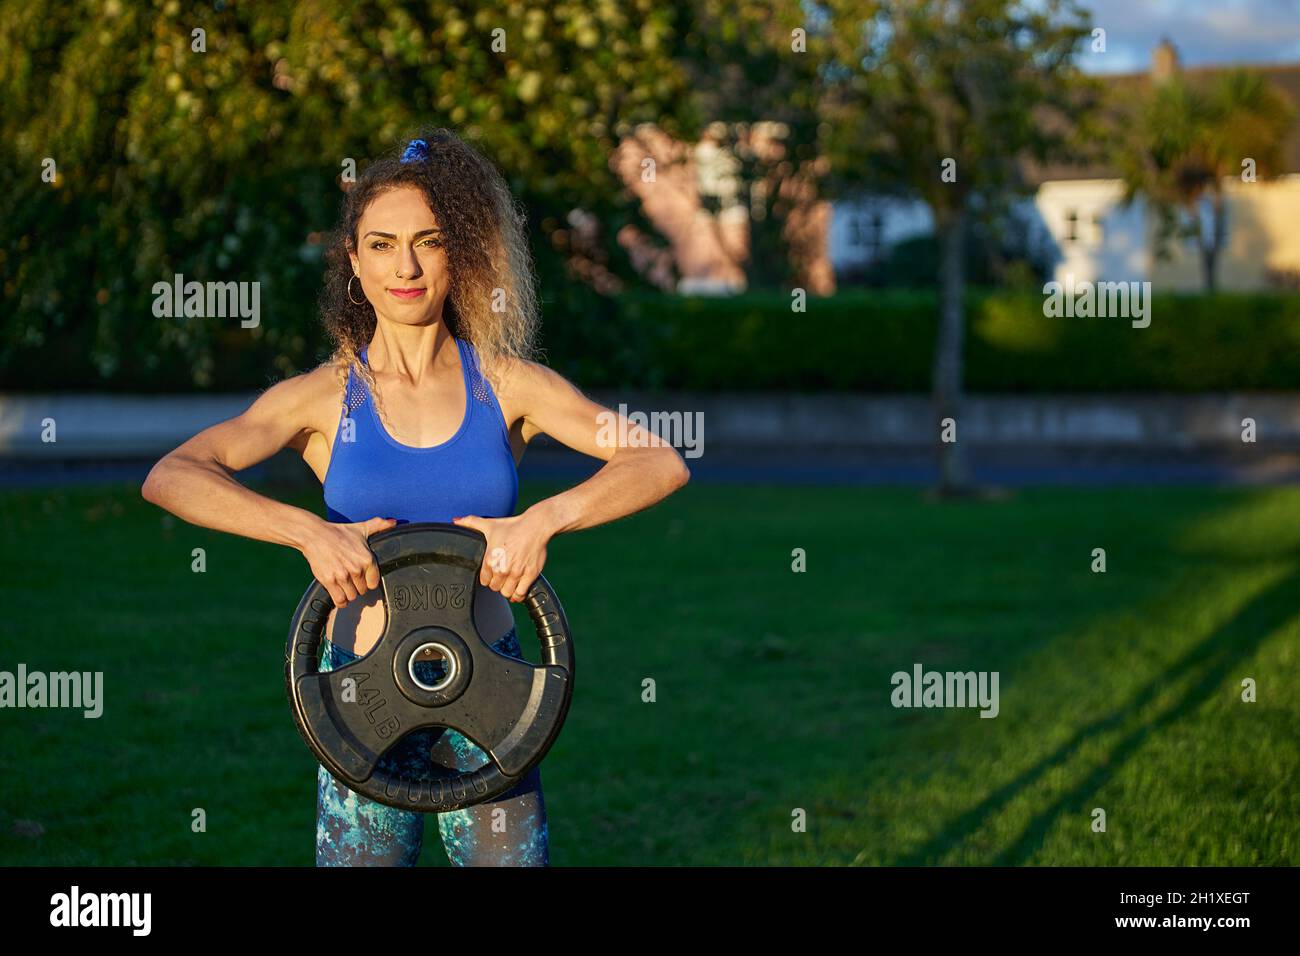 atletica femme en bonne forme physique soulevant un disque très lourd en pratiquant crossfit. Banque D'Images